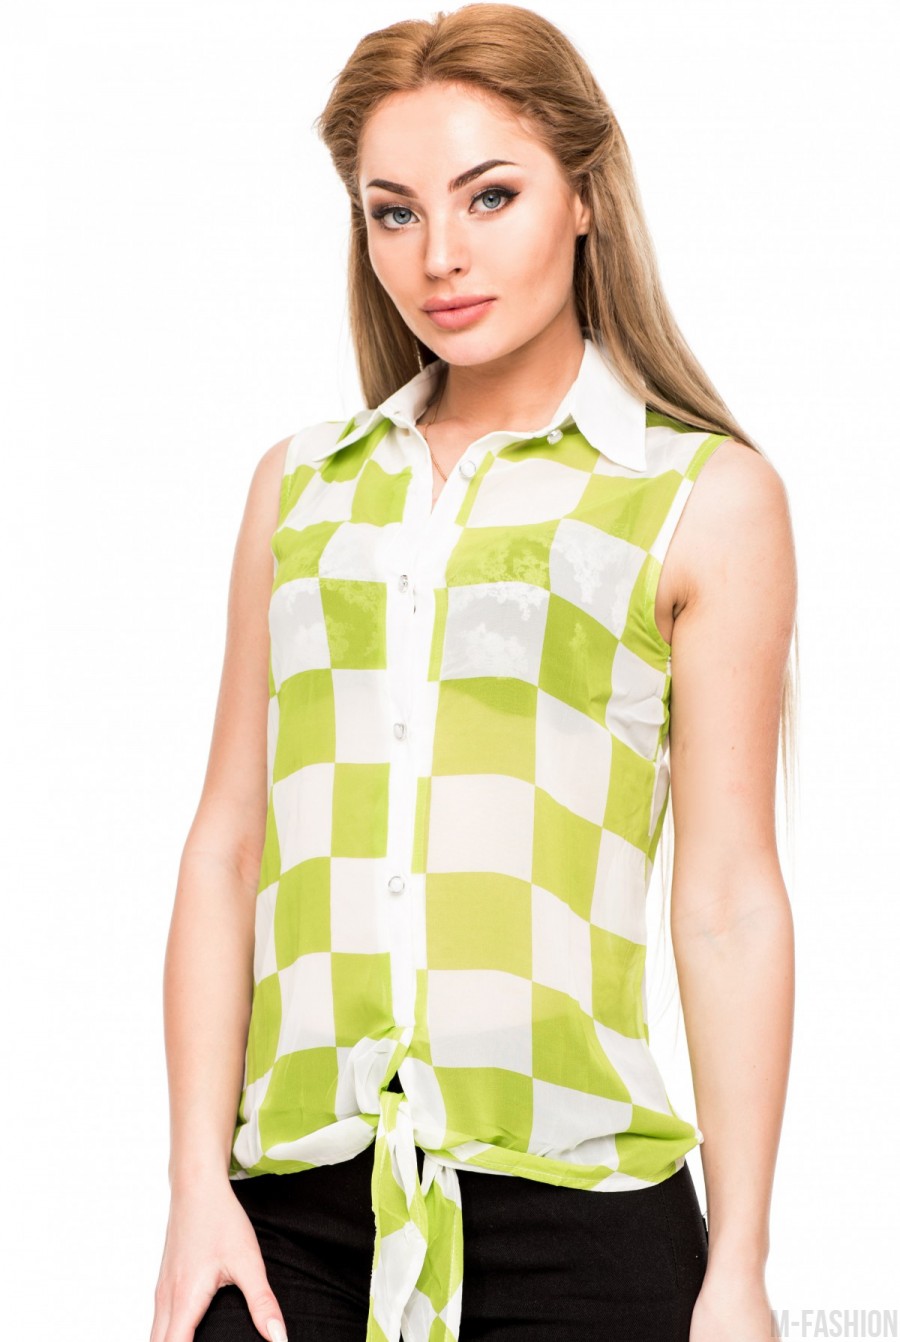 Шифоновая блузка без рукавов в салатовую и белую шахматную клетку - Фото 1